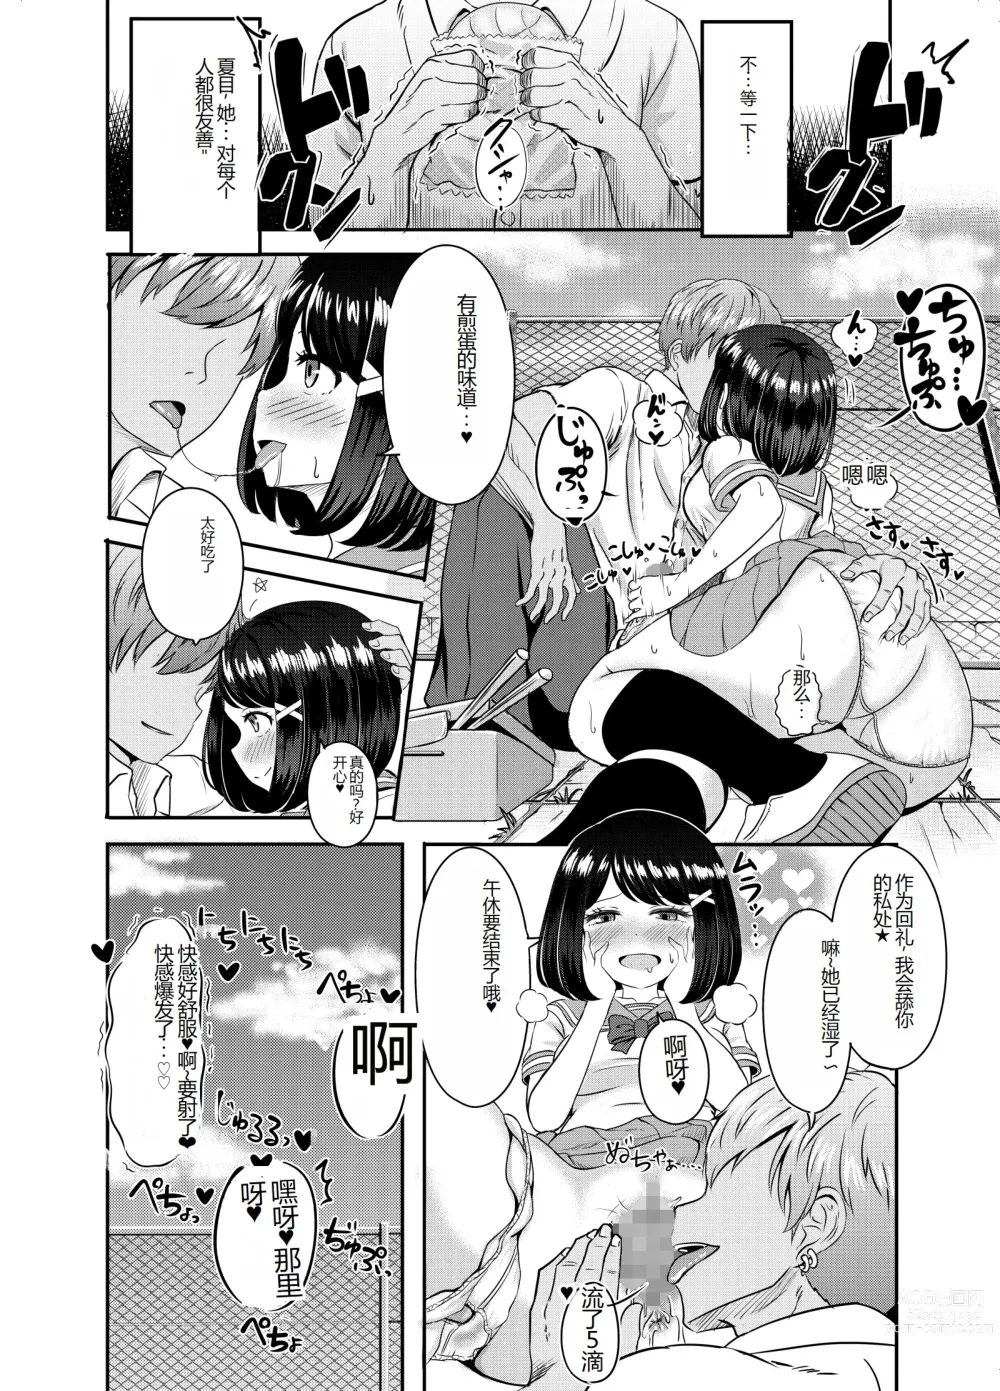 Page 53 of doujinshi 2-nen 3-kumi